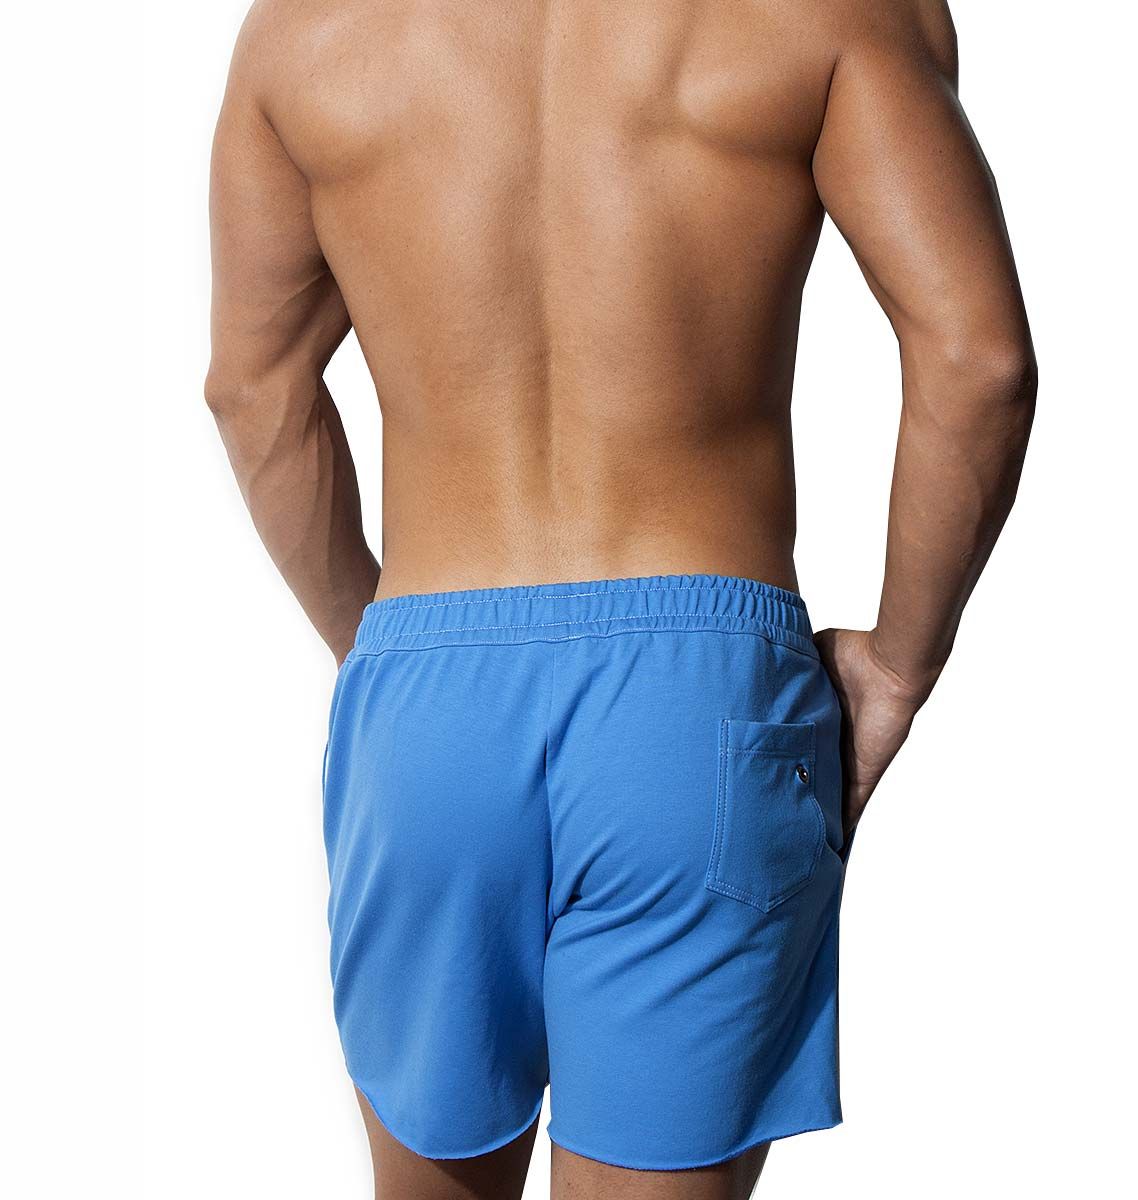 Alexander COBB Pantaloni sportivi corti Athletic Wear LONG BLUE, blu